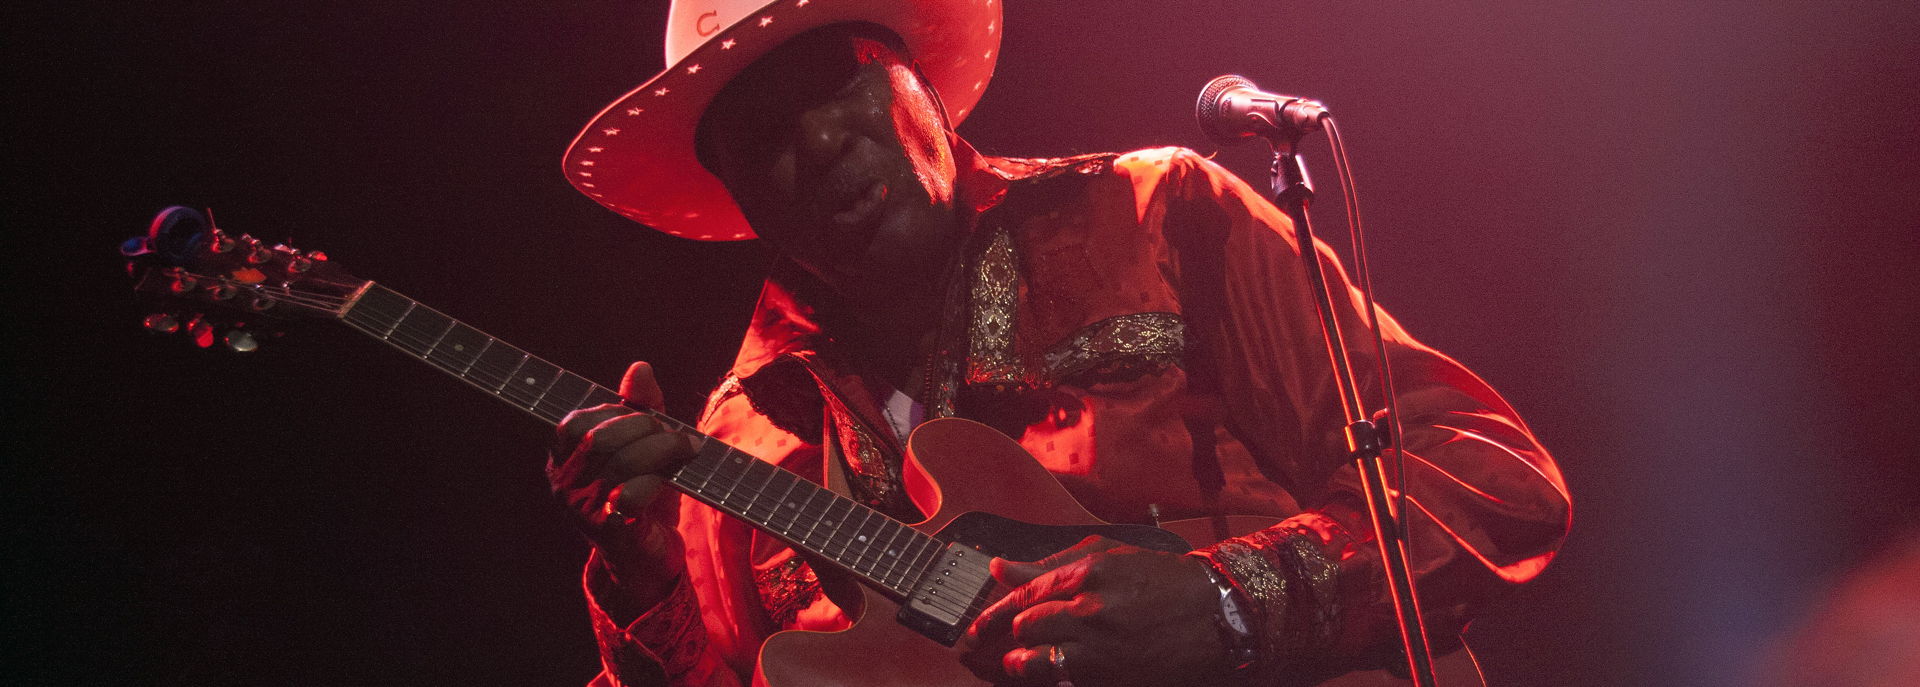 Tijdens de jubileumeditie van het Bluesfestival in De Tamboer speelde Eddy Clearwater.